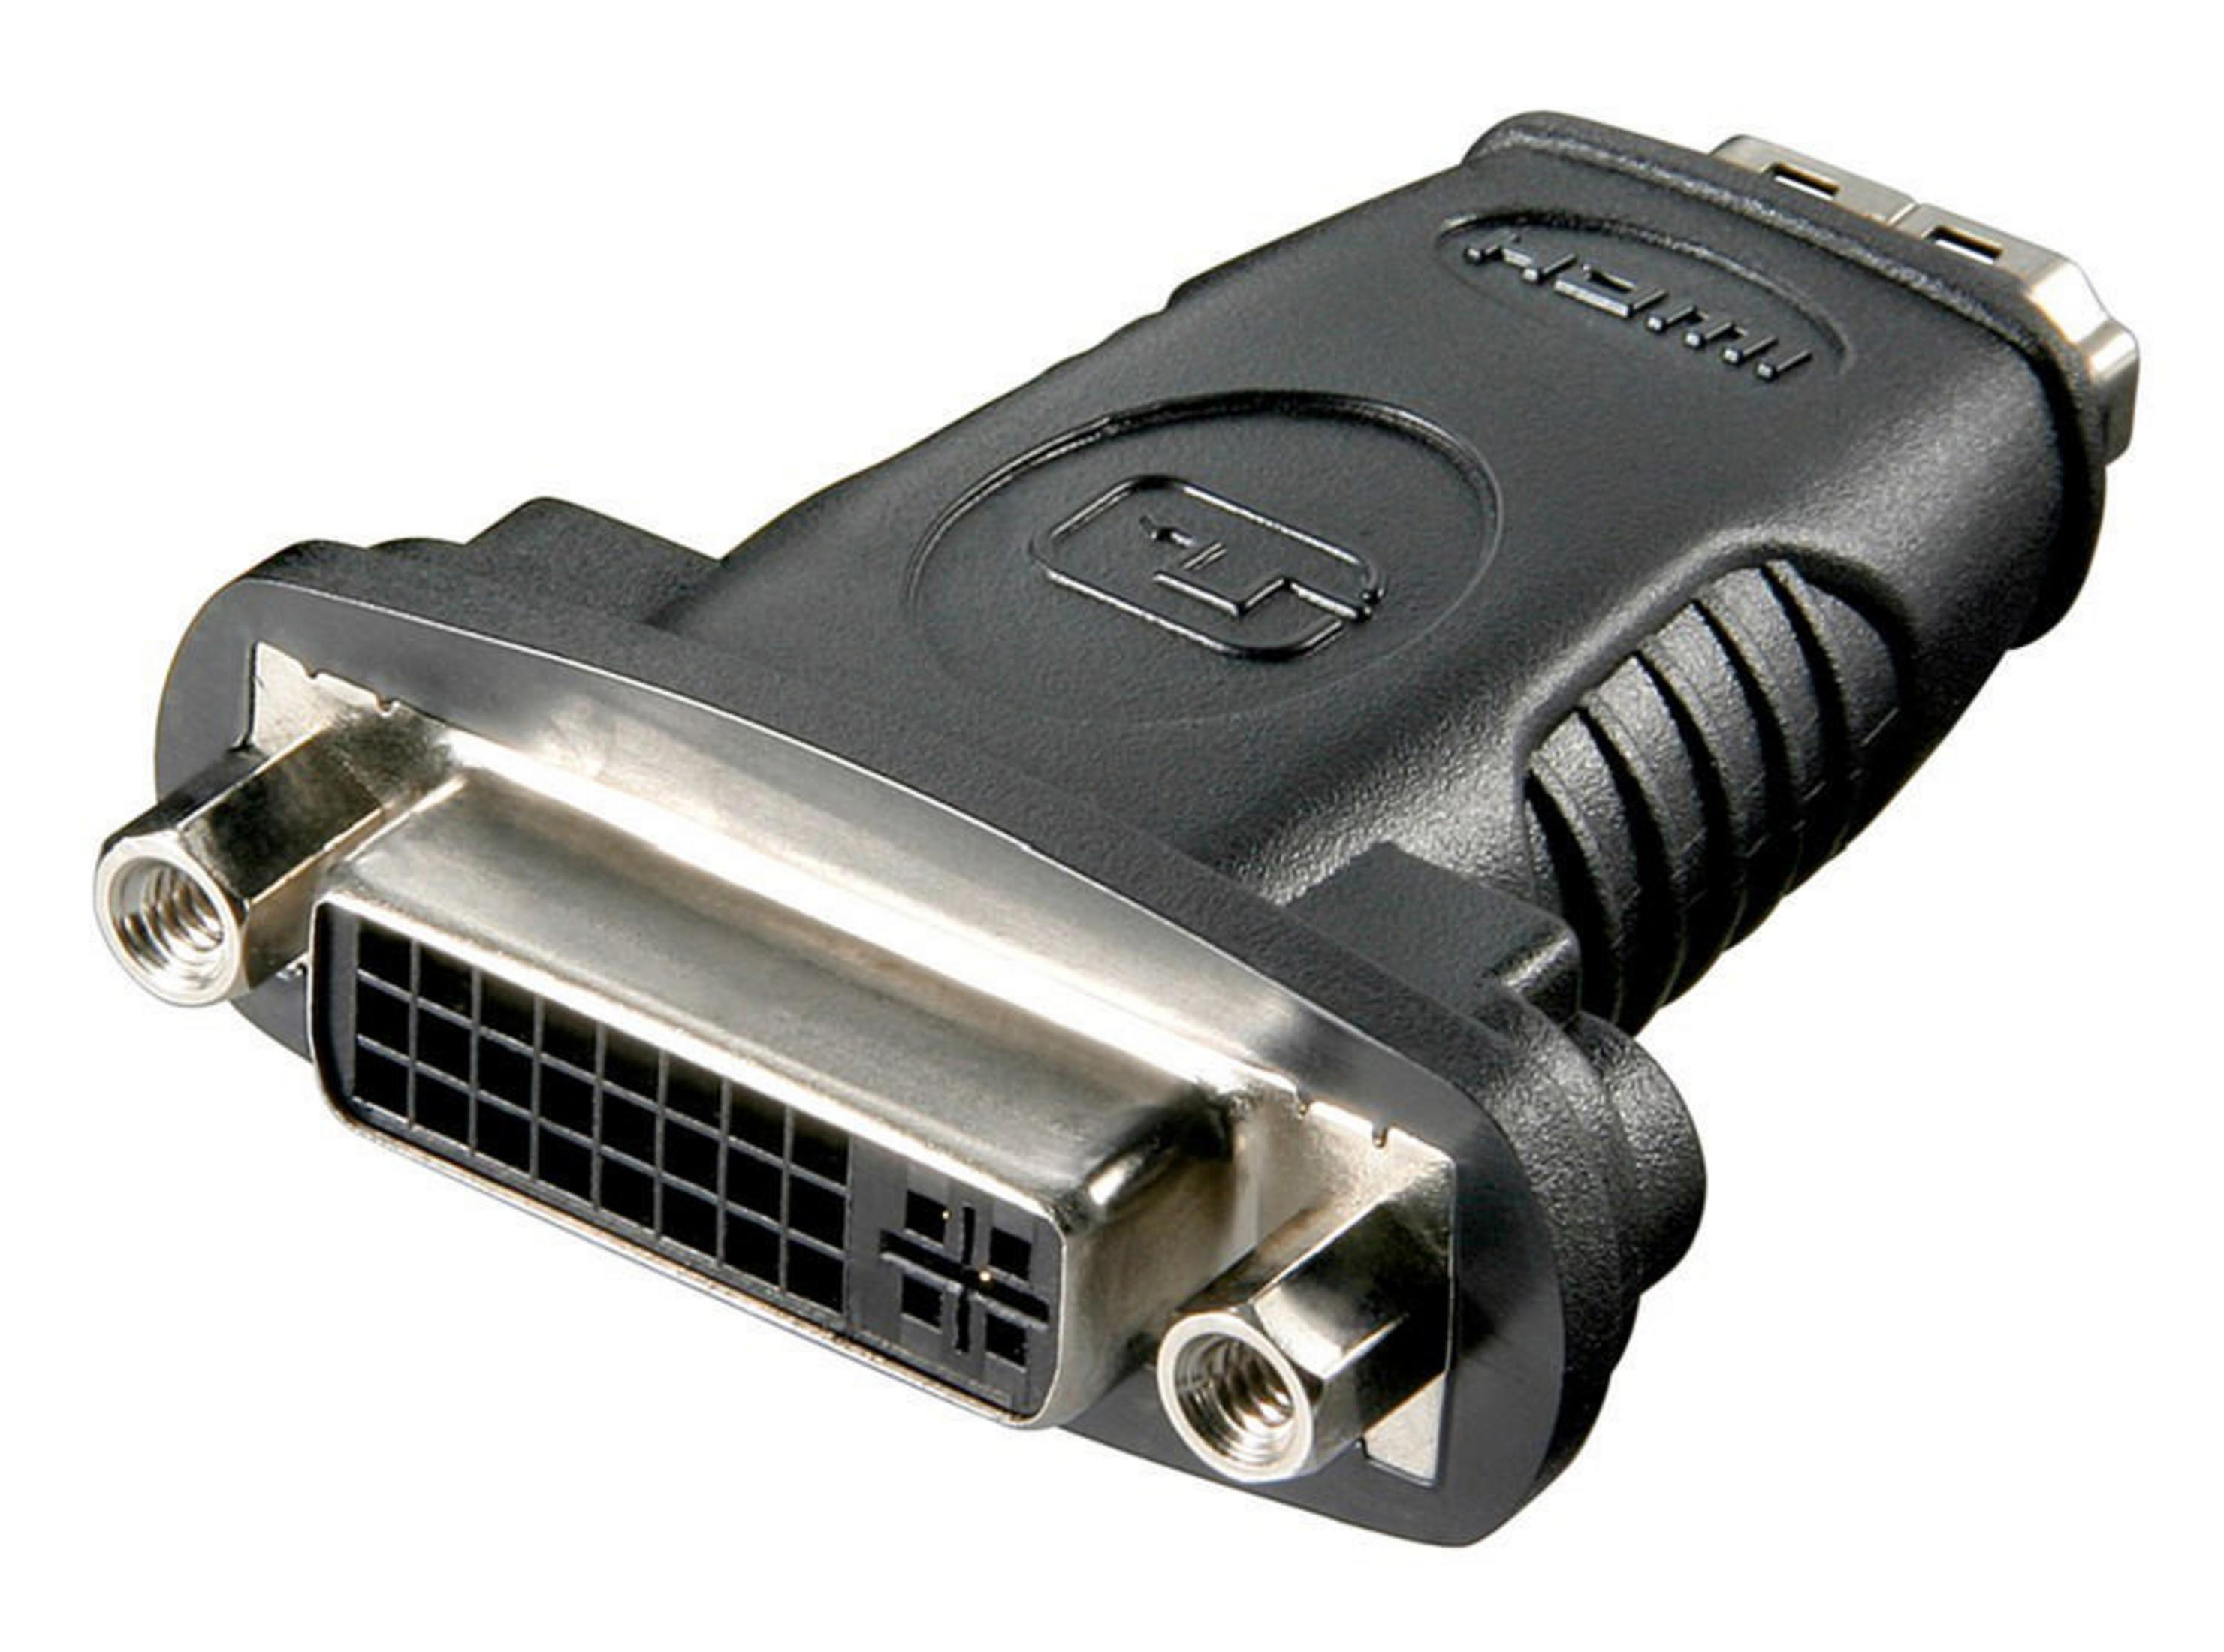 HDMI 19PINF/DVI-D F, 24+5PIN 60752 ADAPTER GOOBAY Adapter